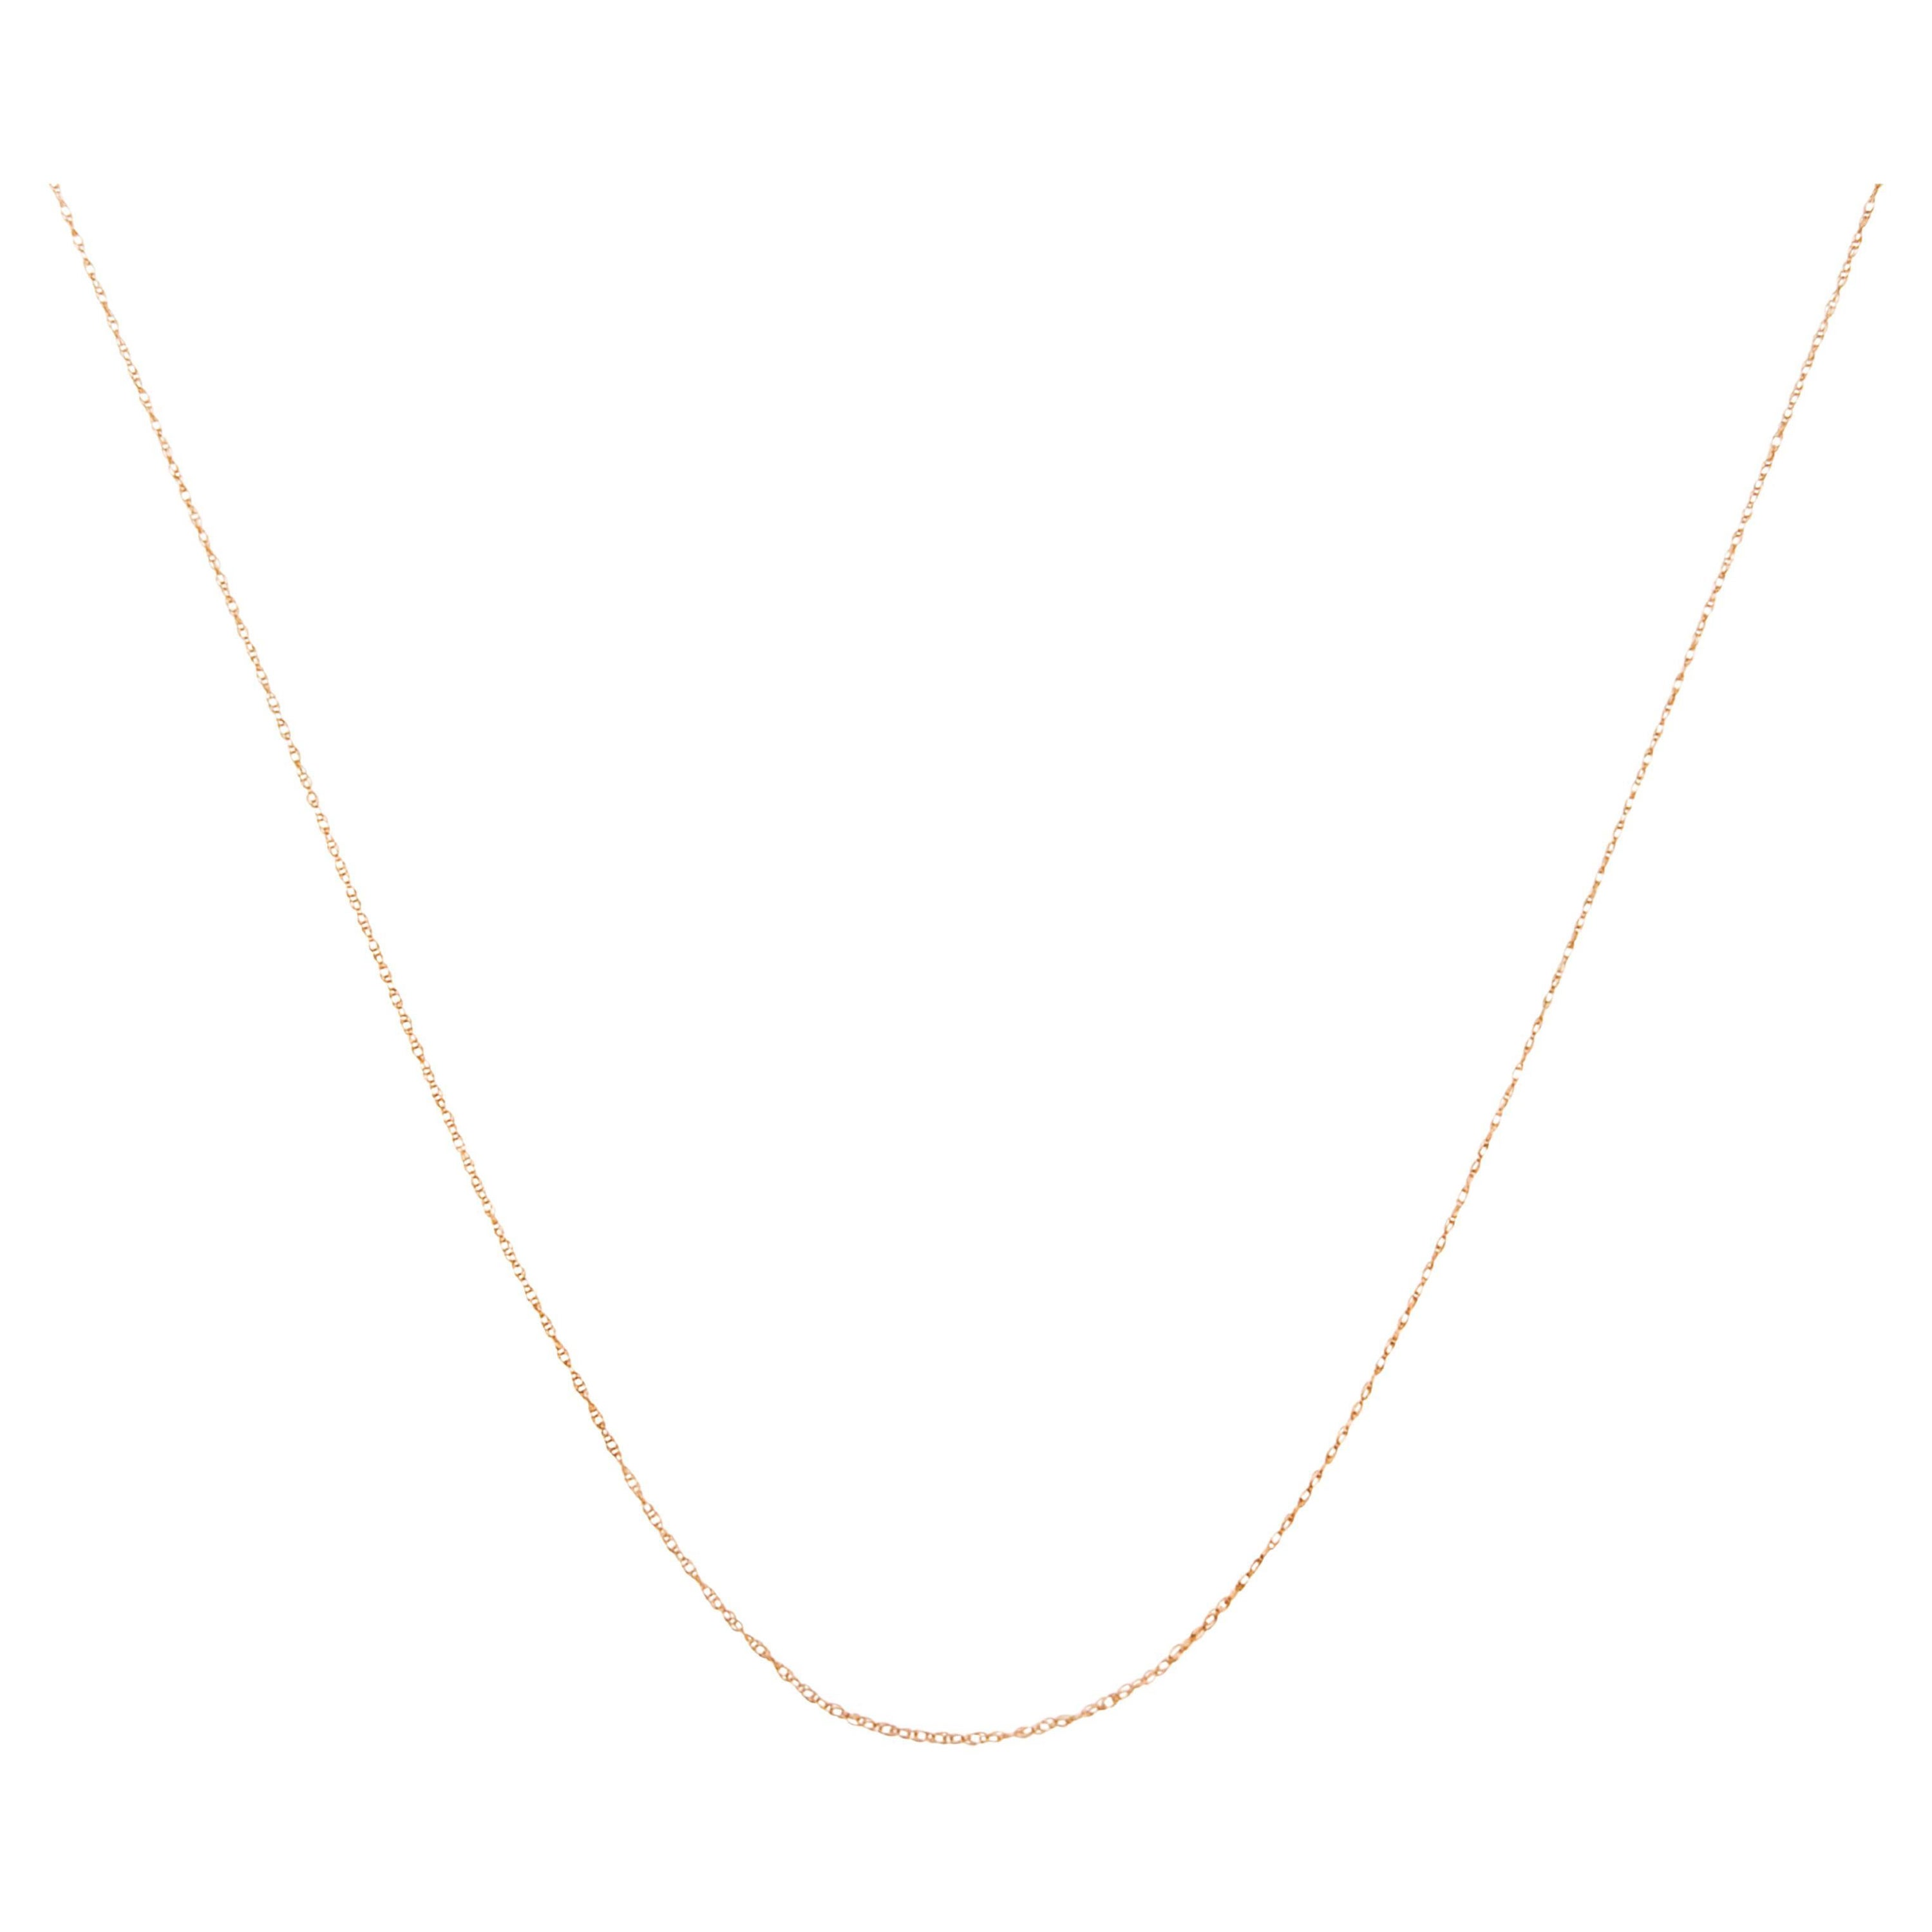 Halskette aus massivem 10 Karat Roségold, schlank und reichhaltig, Unisex